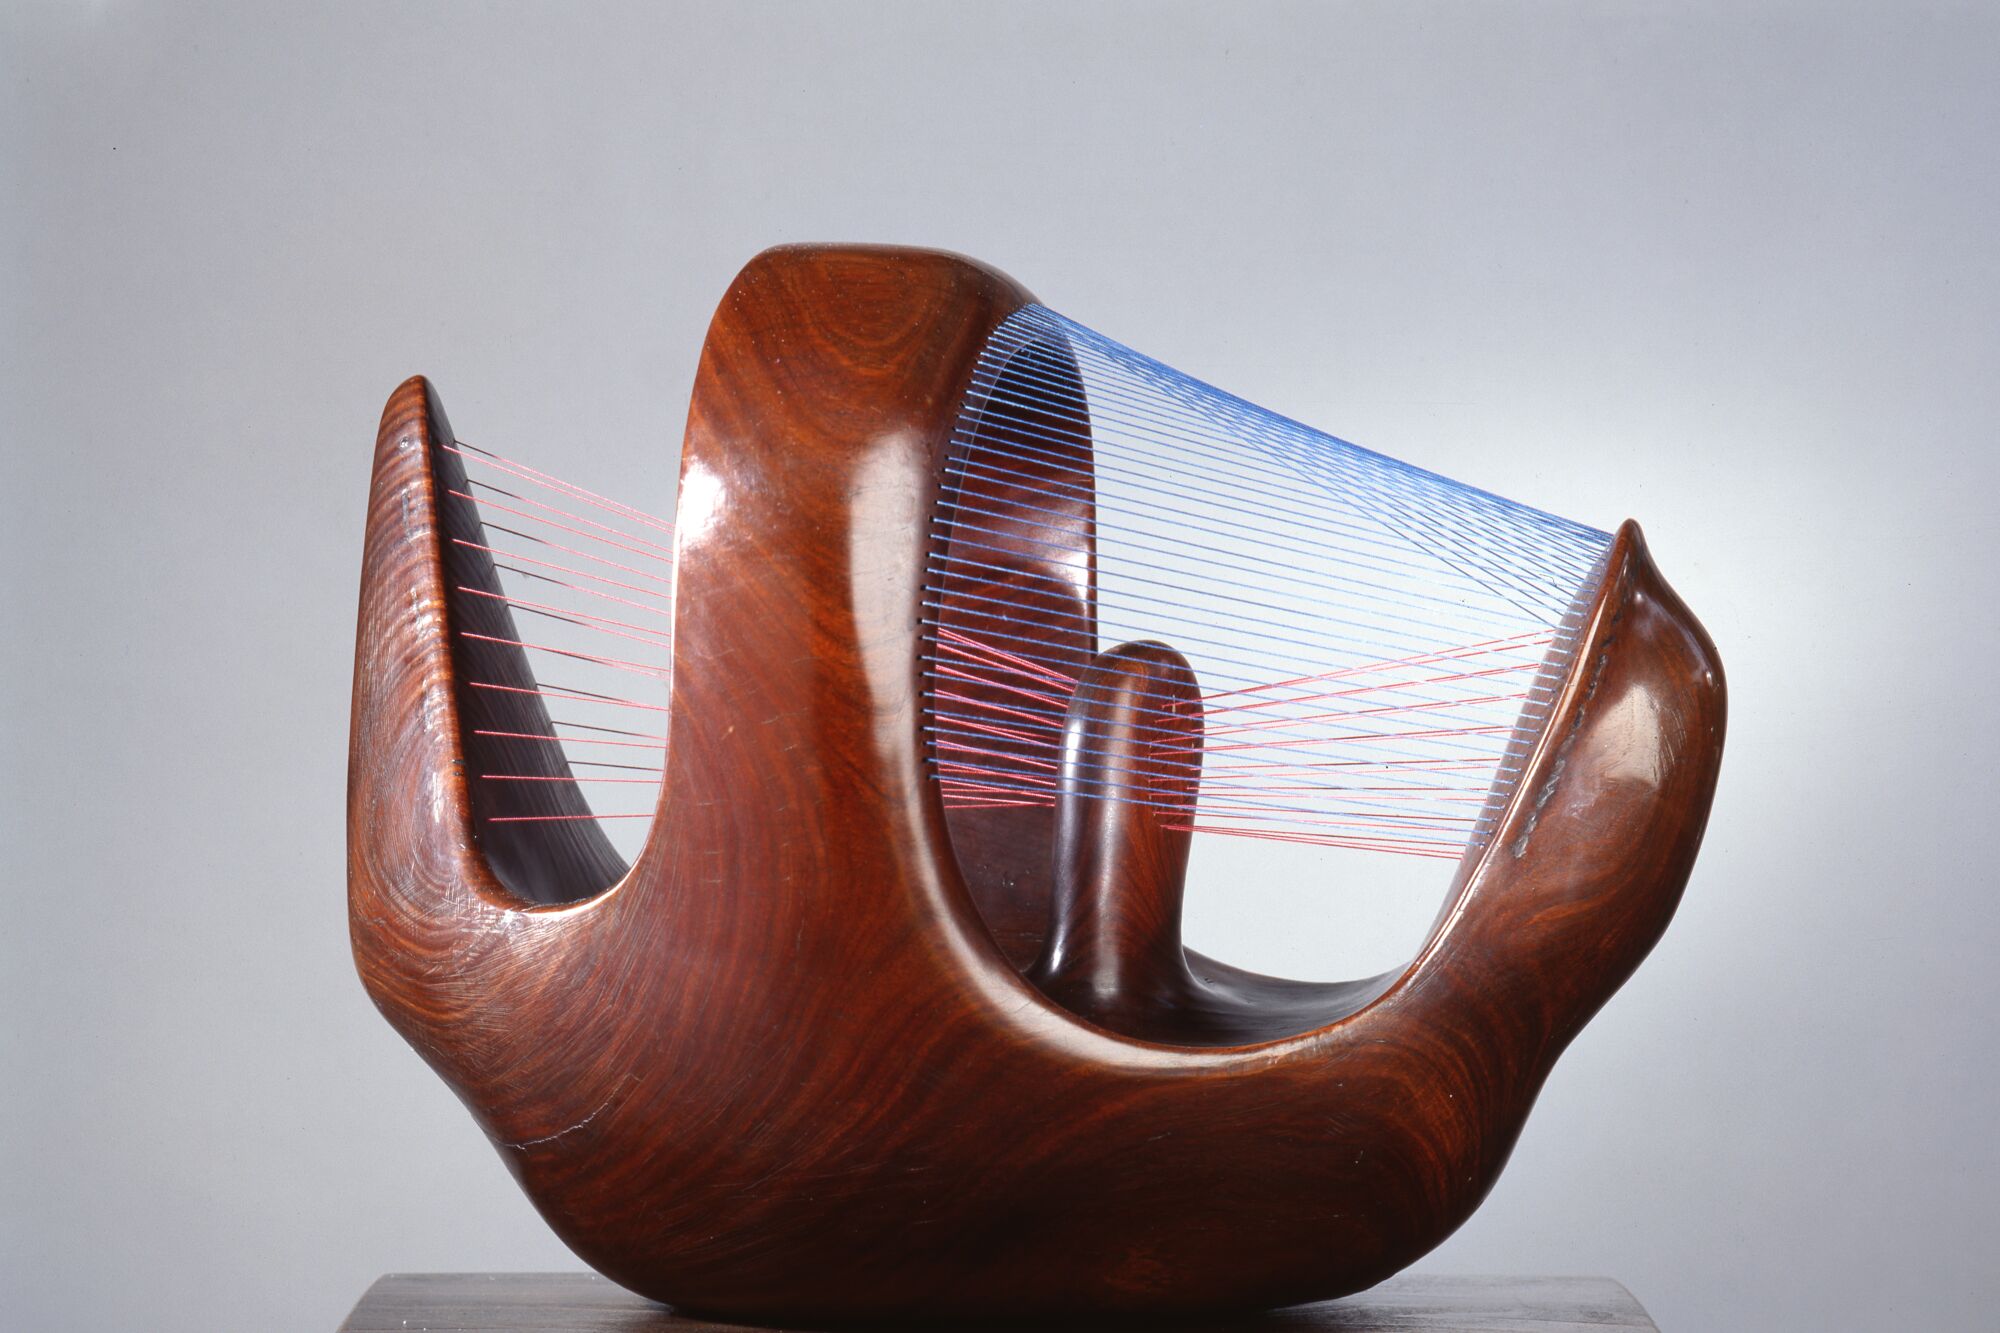 Henry Moore "Bird Basket" wood sculpture.